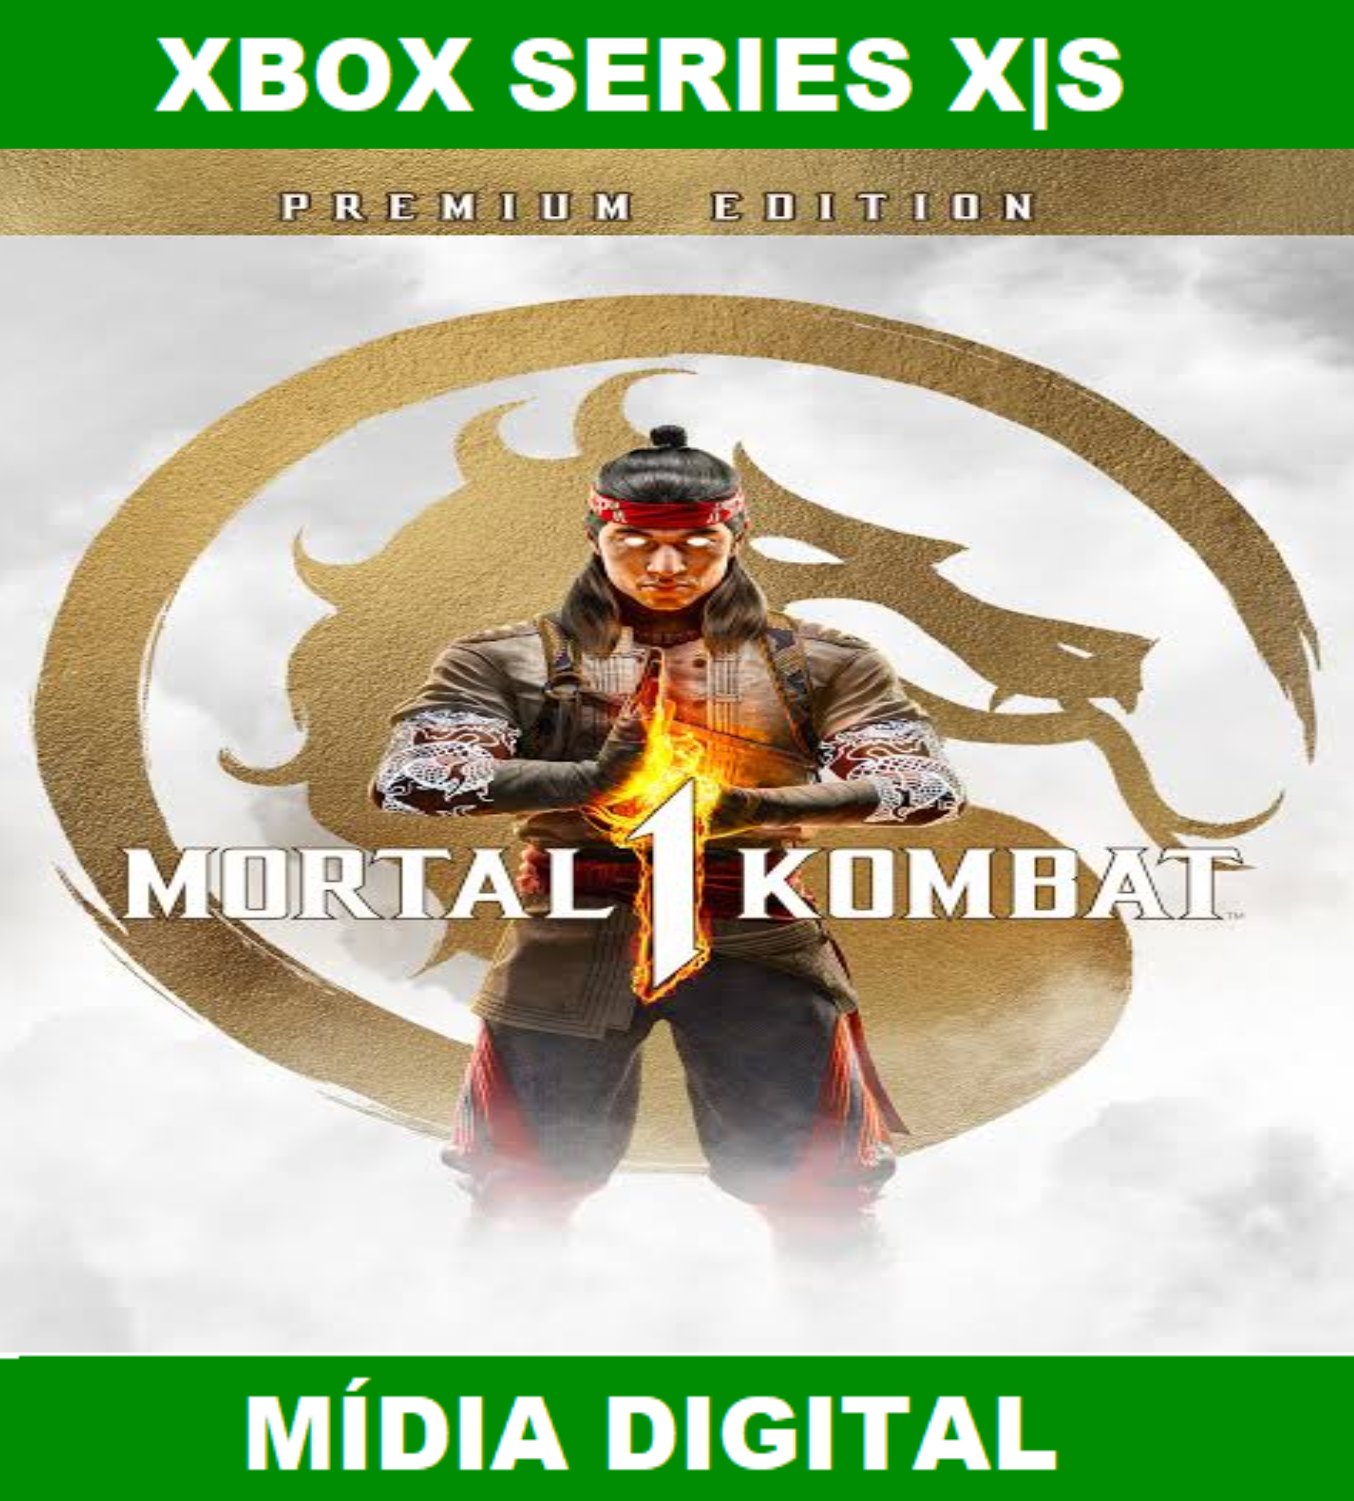 Mortal Kombat 11: Pacote de Kombate – Trailer Oficial de Revelação